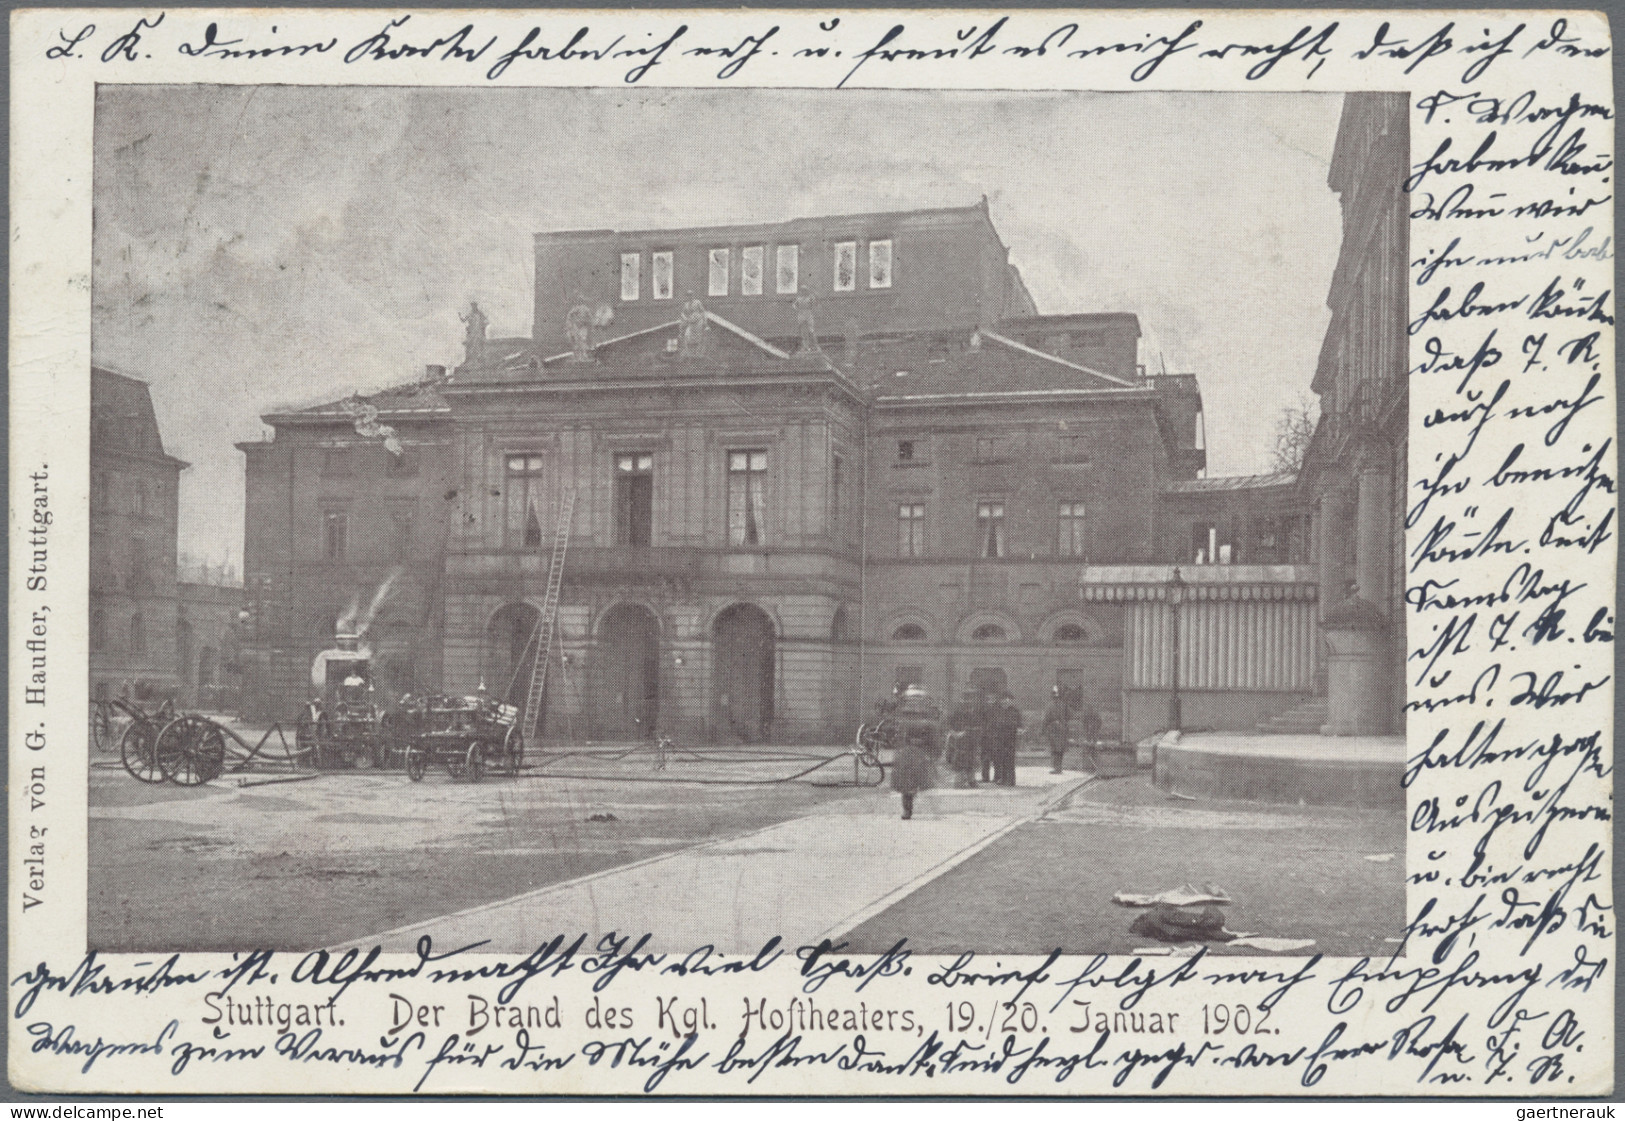 Ansichtskarten: Baden-Württemberg: 1896/1950 (ca.), vielseitige Partie von ca. 2